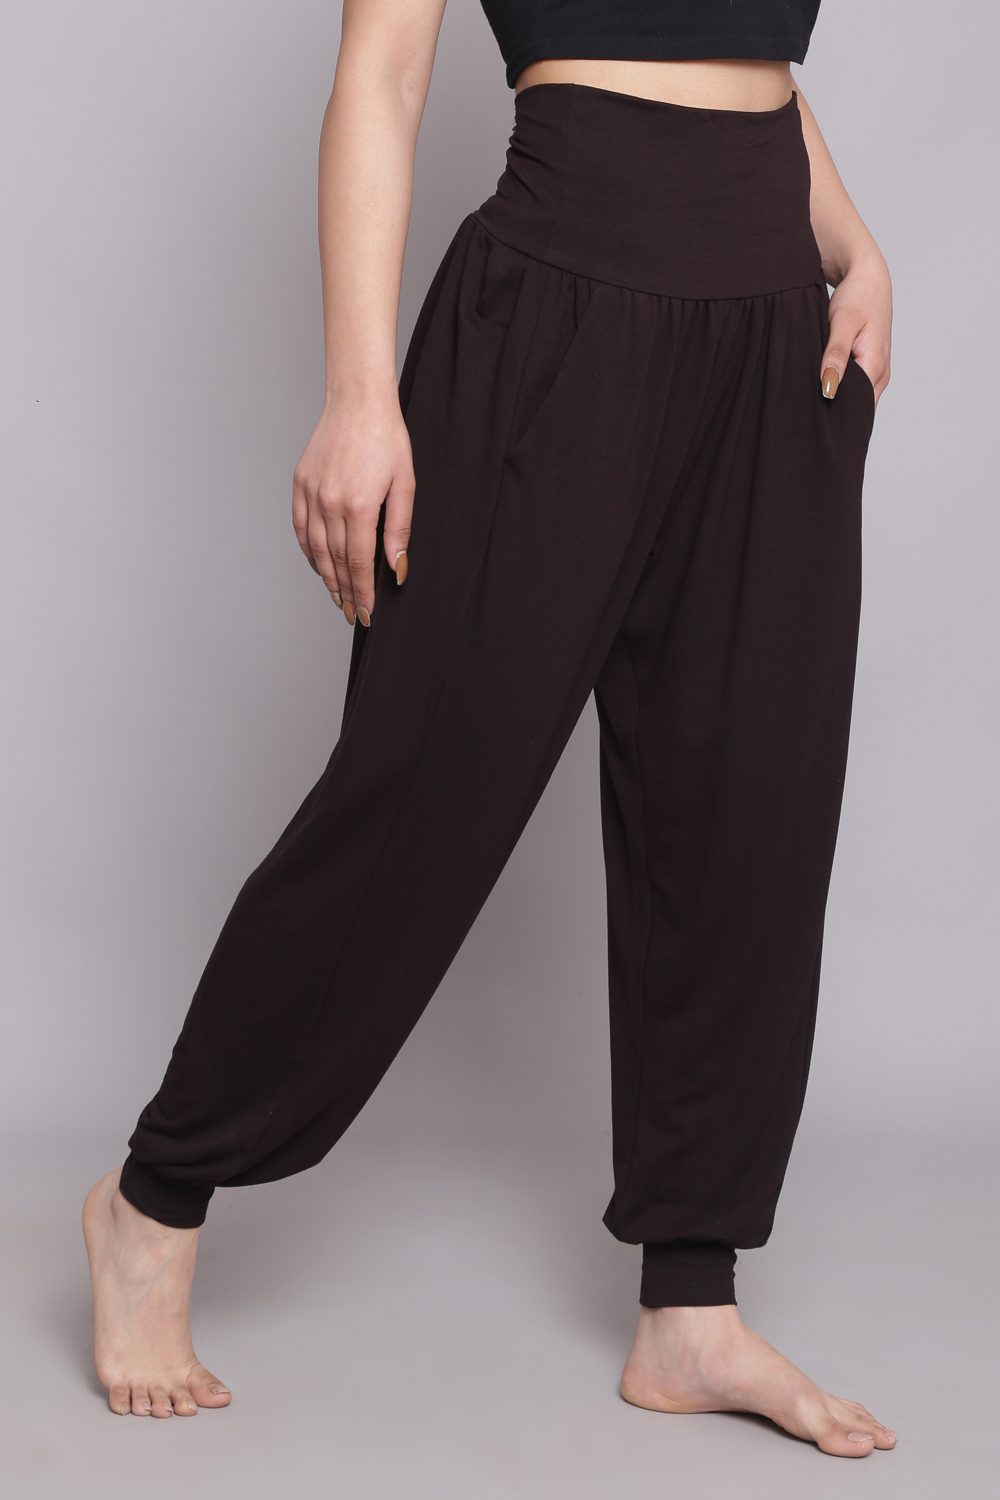 Buy Black Viscose Blend Harem Pants (Yoga Pants) for INR599.00